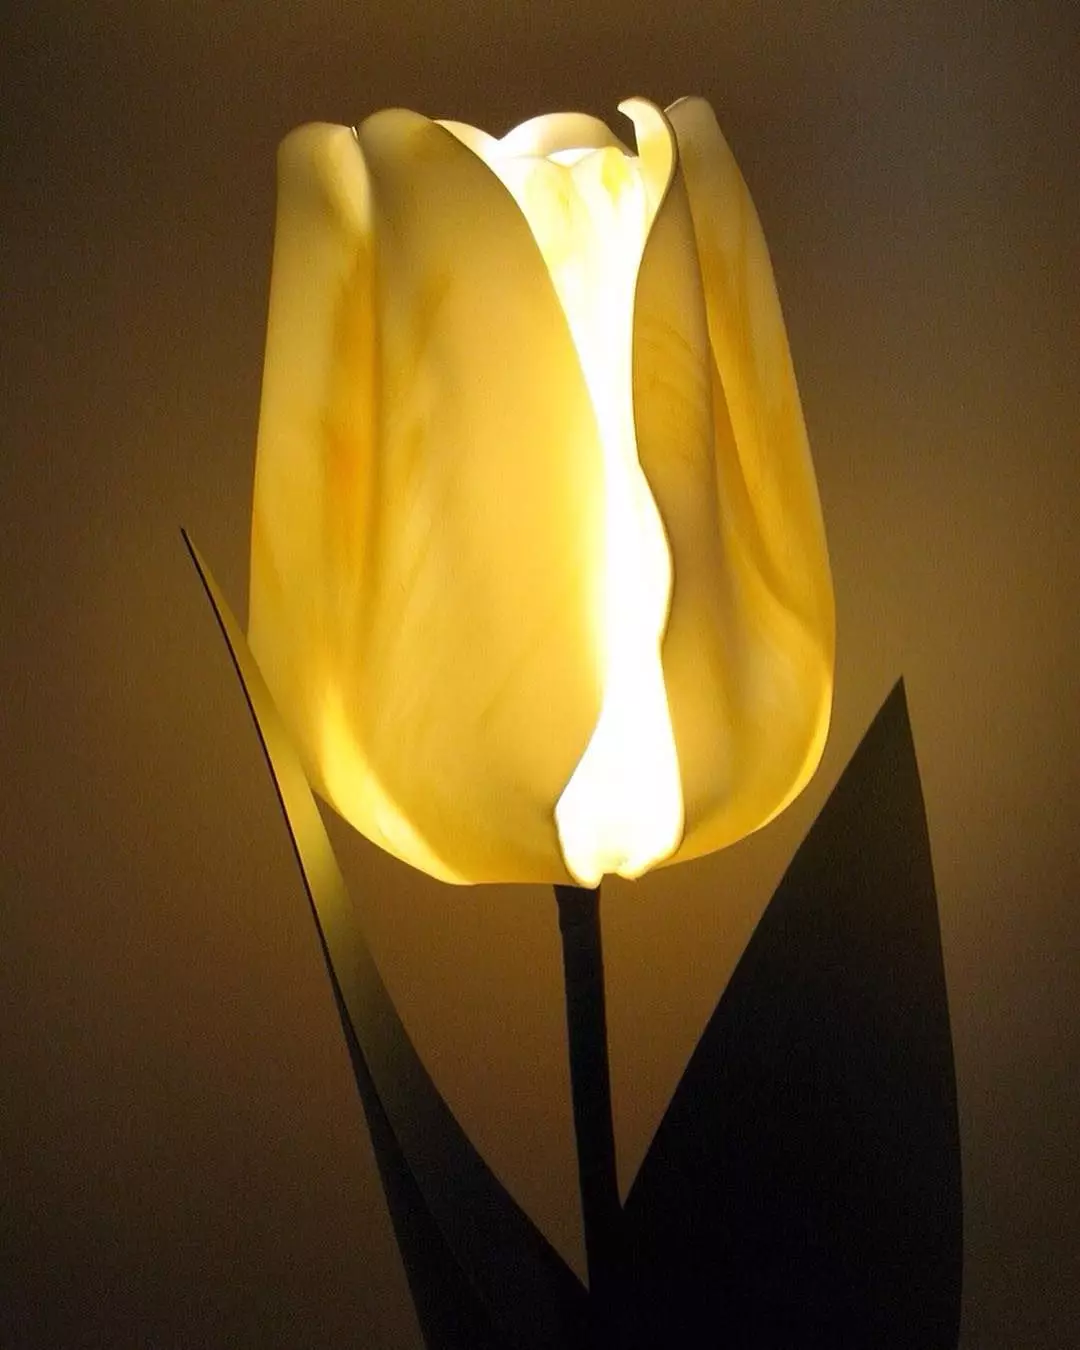 Izolone Lampa (52 zdjęcia): Master Class of Bukiet na suficie z własnymi rękami, nocnym światłem nocnym w formie jednorożca, tulipanów, koszy z irysami i innymi opcjami 26802_16